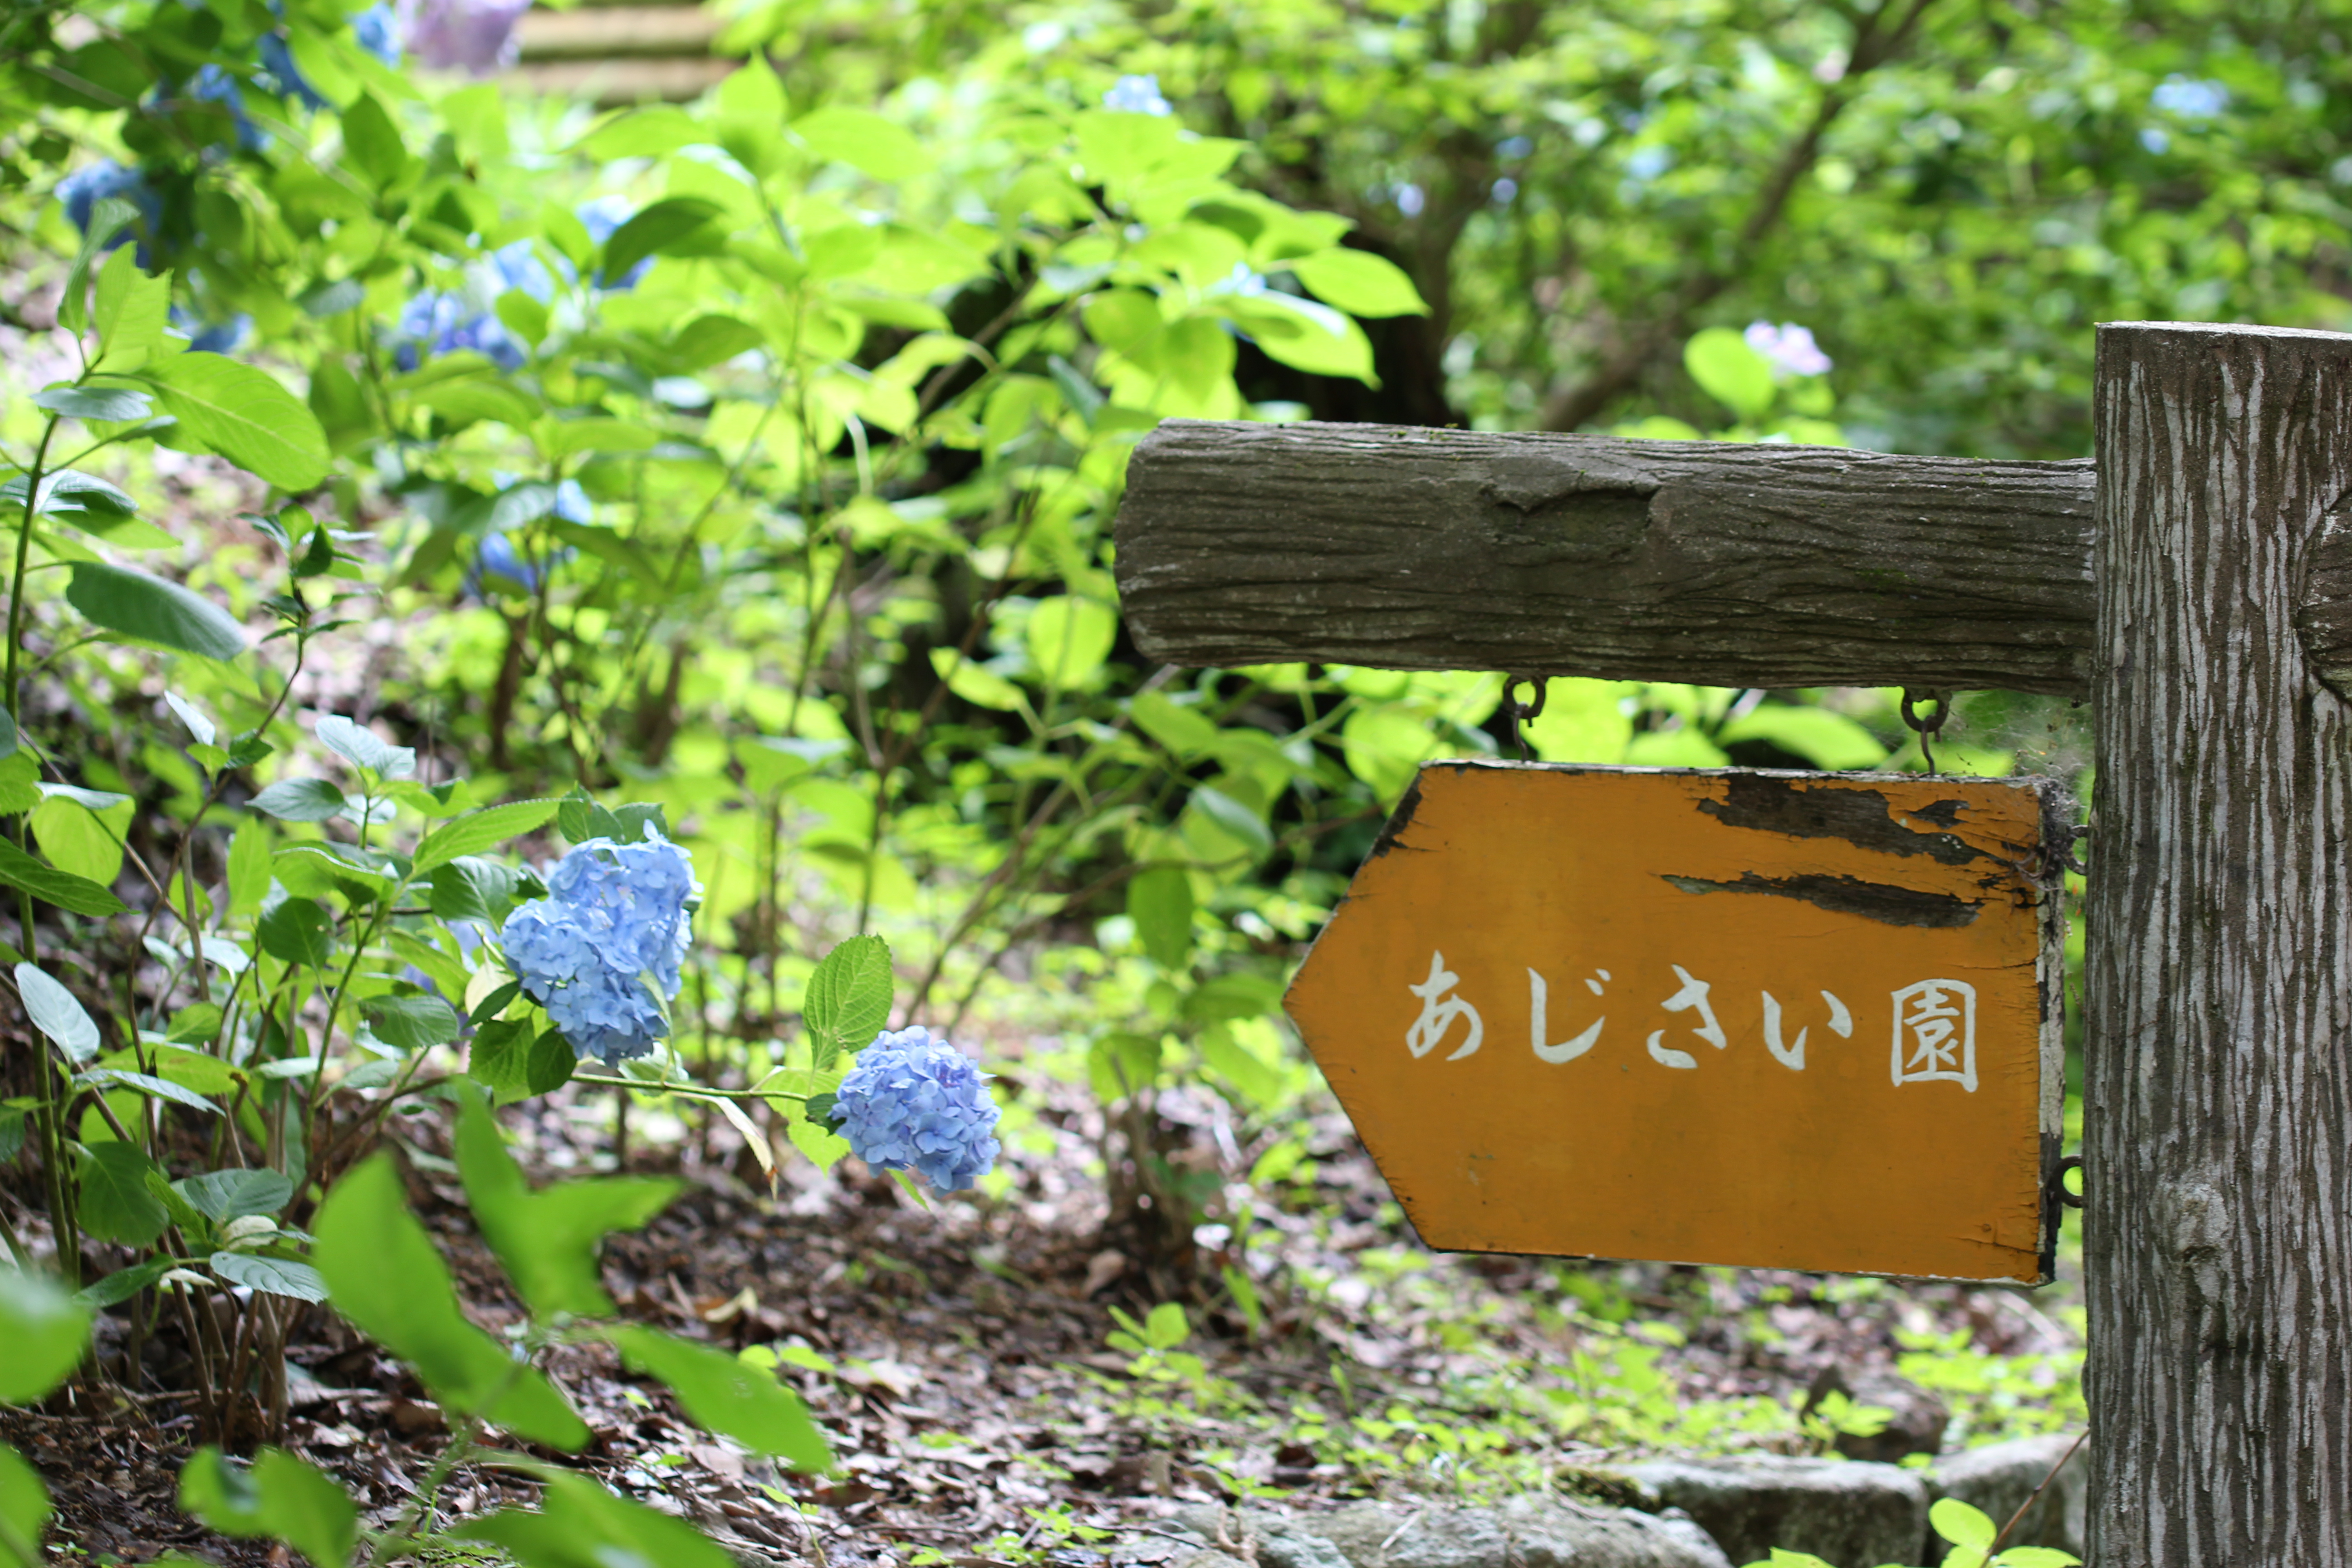 神戸森林植物園 紫陽花や紅葉が有名な人気観光スポット 神戸ファインダー